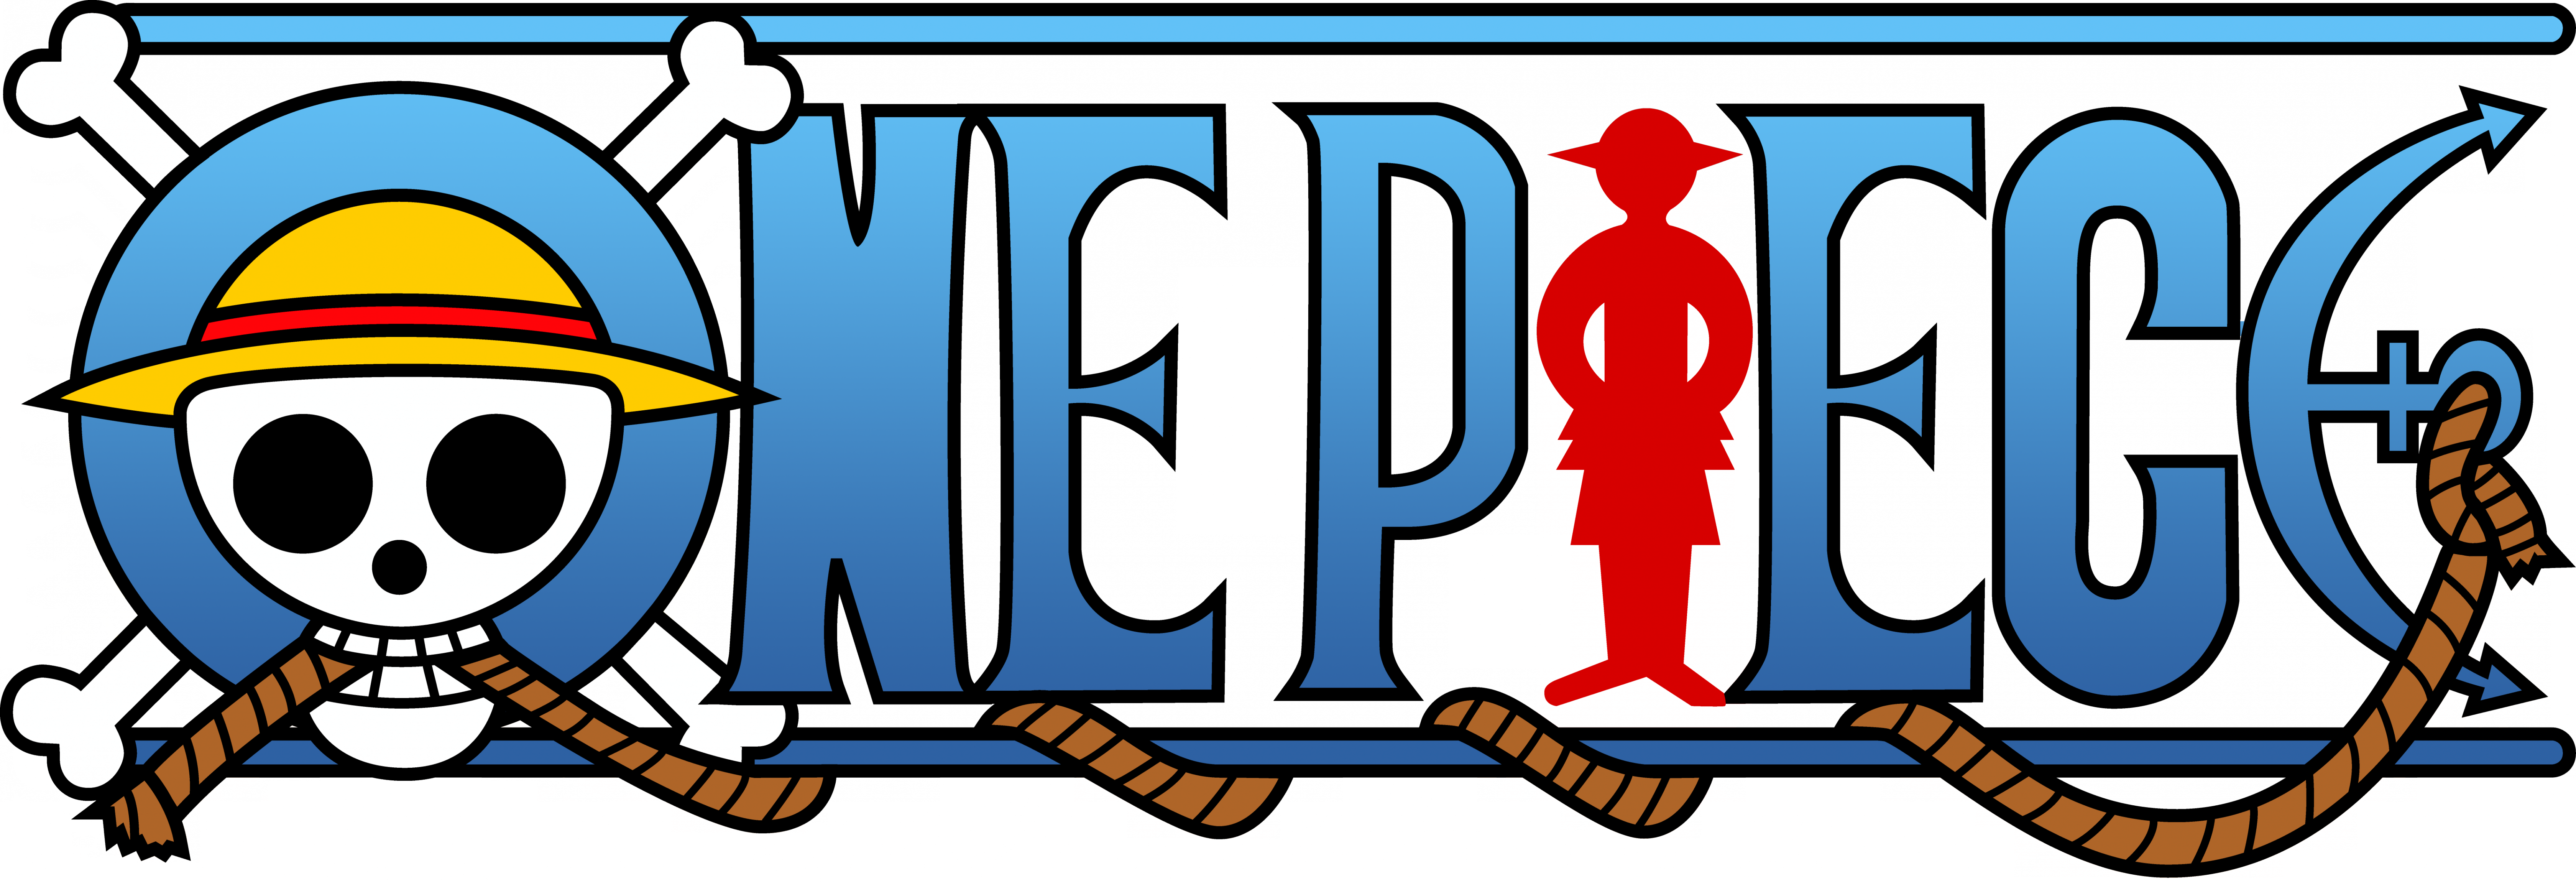 One Piece Logo - One Piece Logo Png (6720x2300)